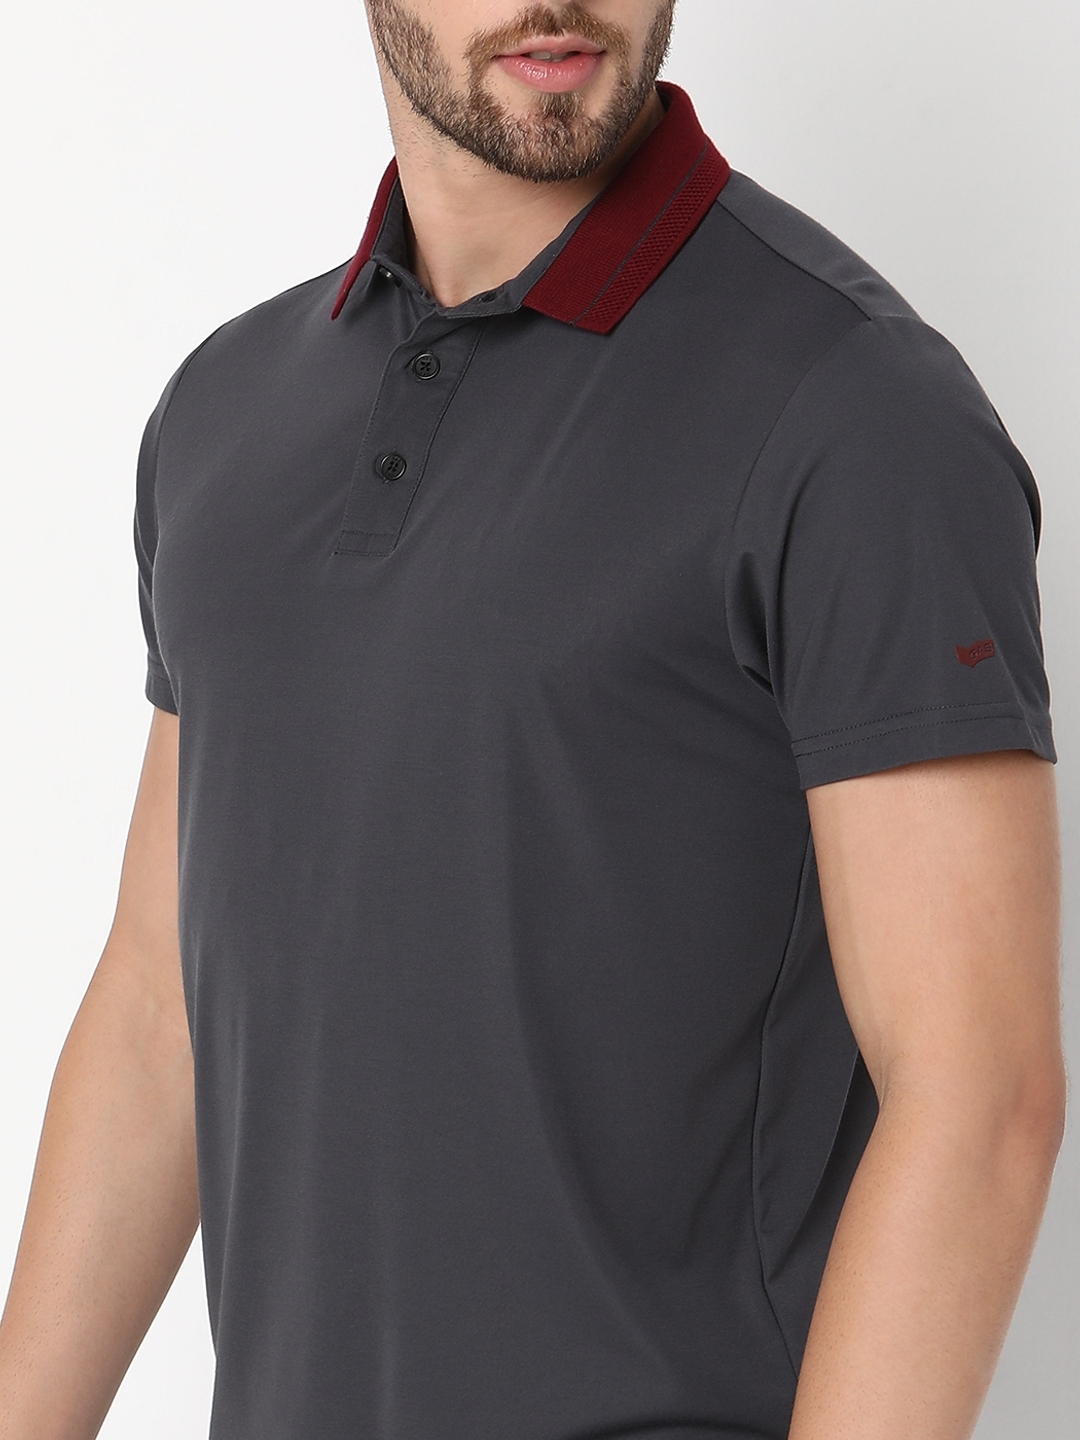 Slim Fit Half Sleeve Solid Tencil Nylon Polo T-Shirt